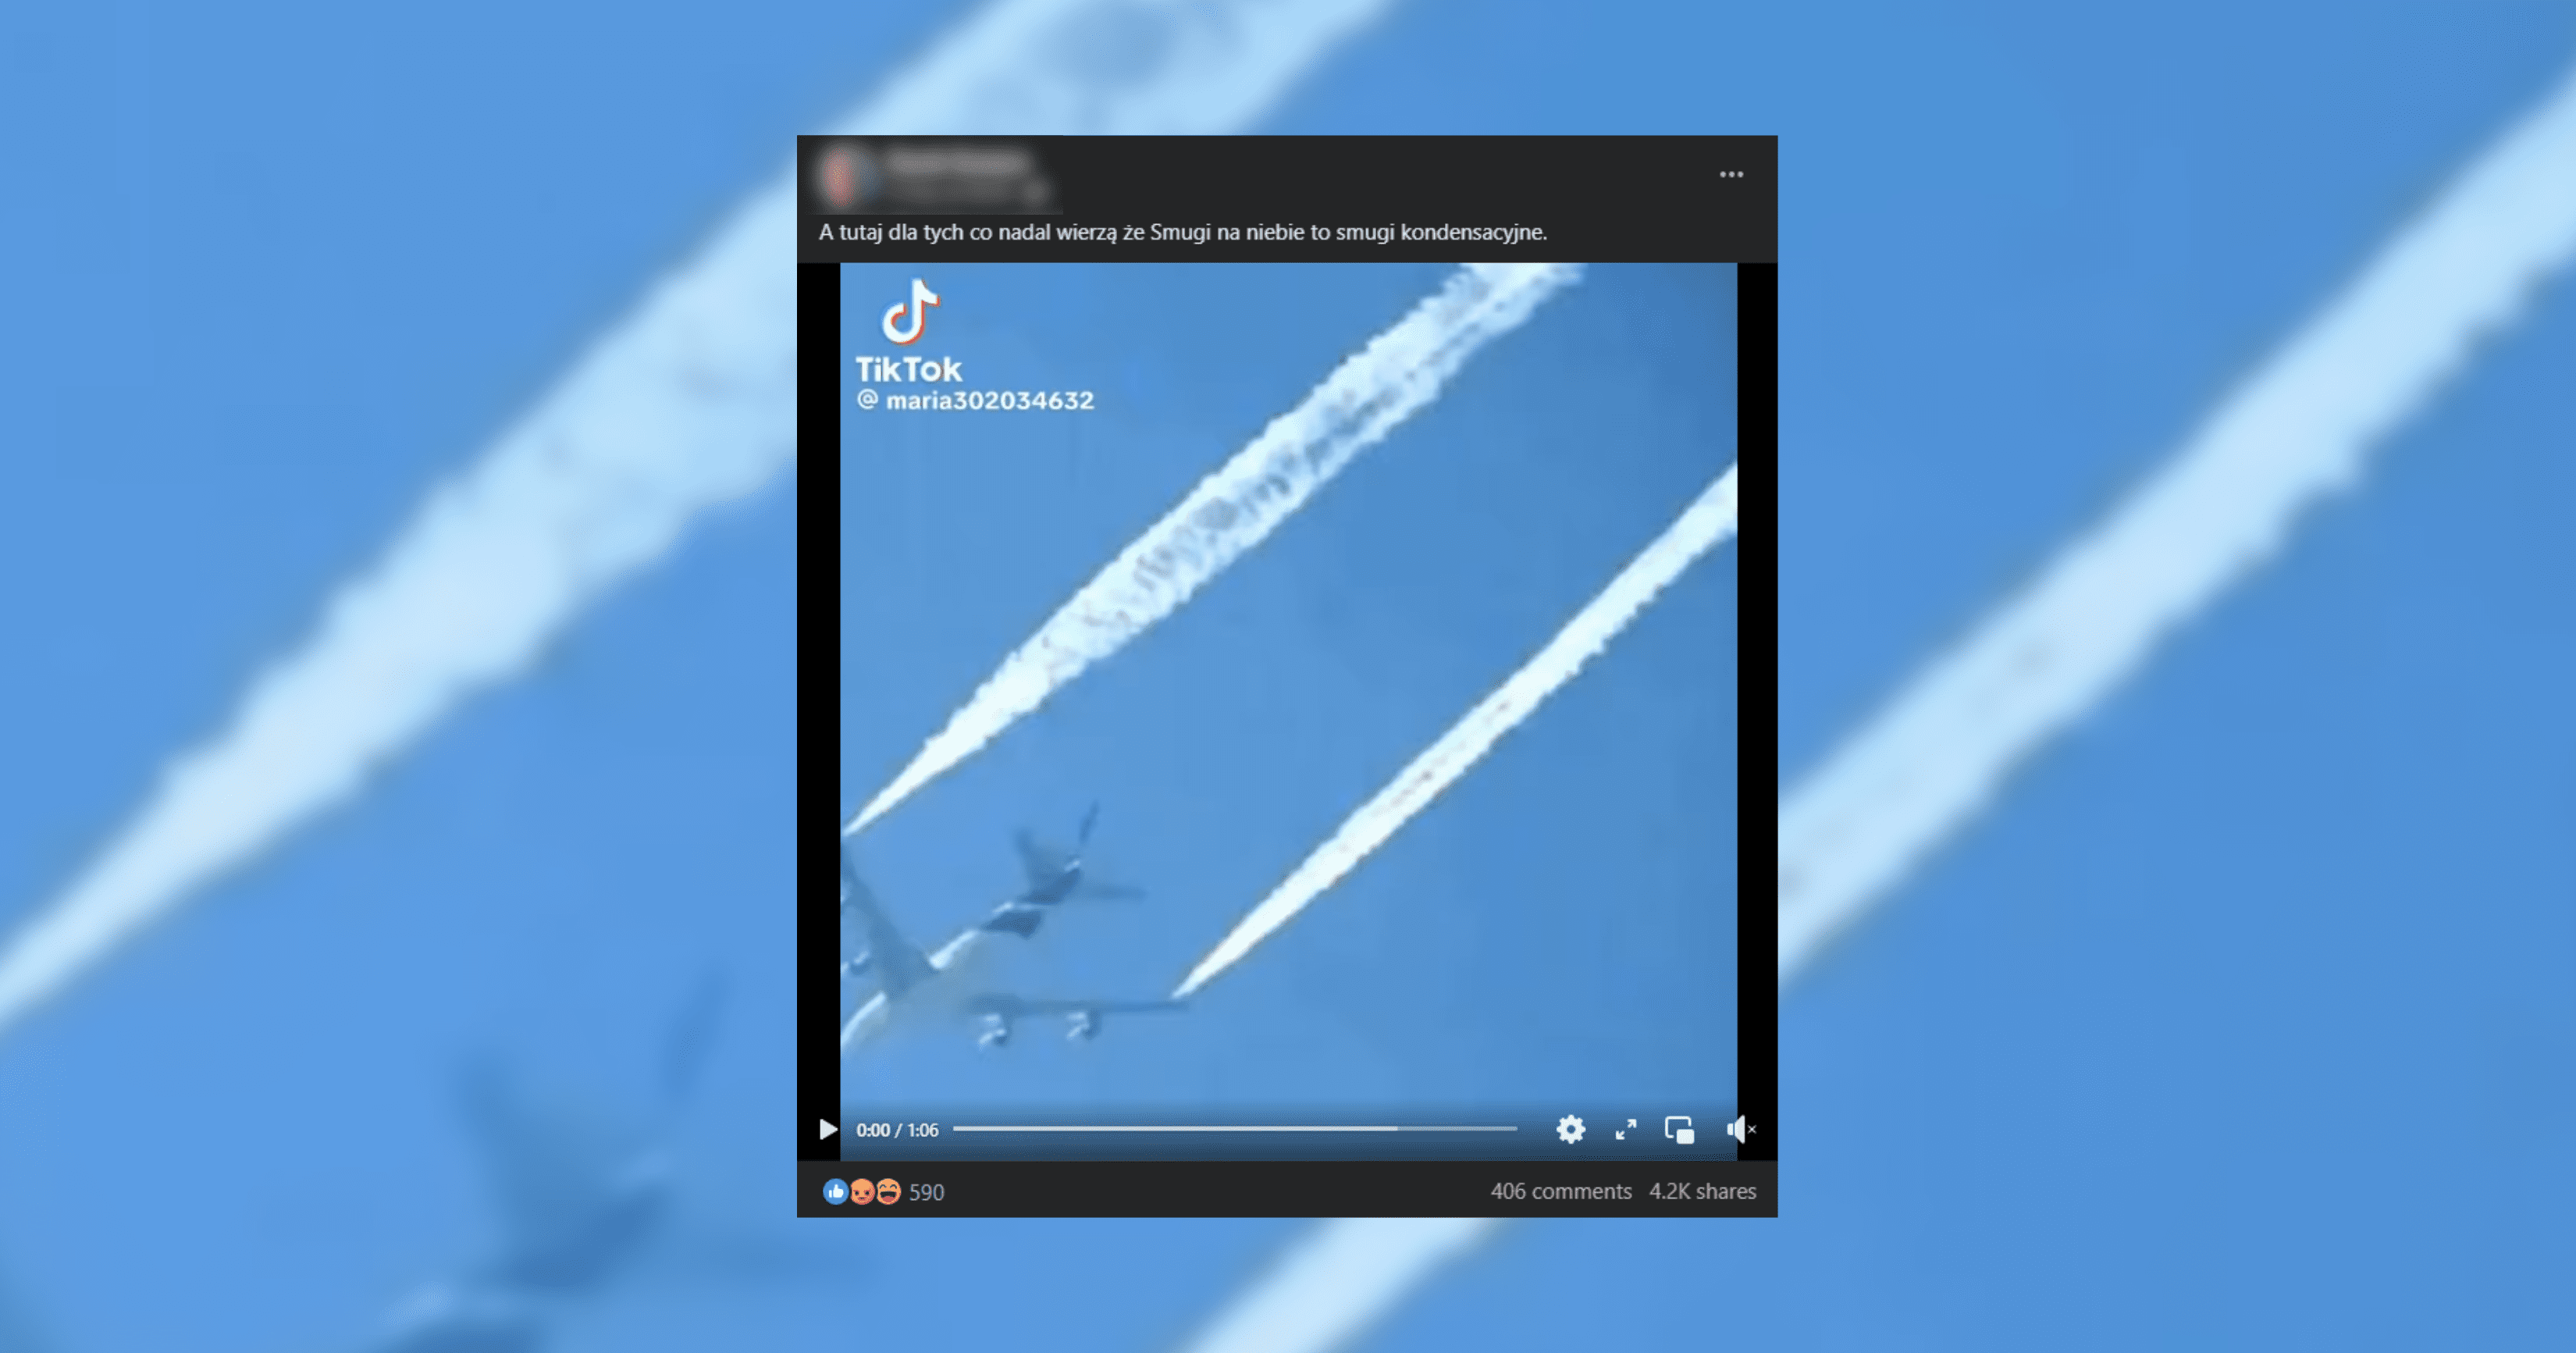 Screenshot posta o treści „A tutaj dla tych co nadal wierzą że Smugi na niebie to smugi kondensacyjne” z obrazkiem smug chemicznych za samolotem